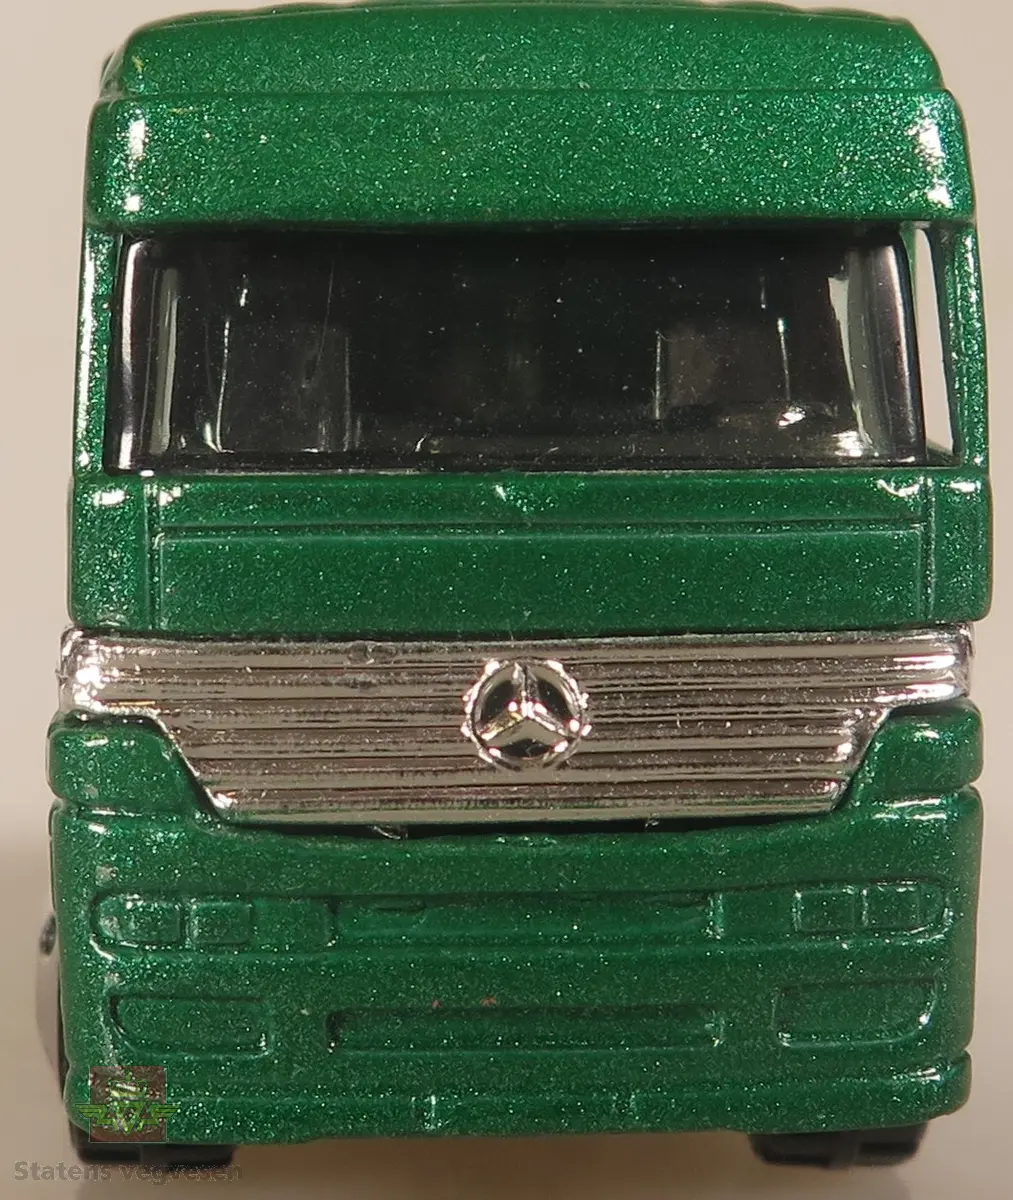 Modell lastebil av en Mercedes Benz Actros, modellastebilen er farget grønn.